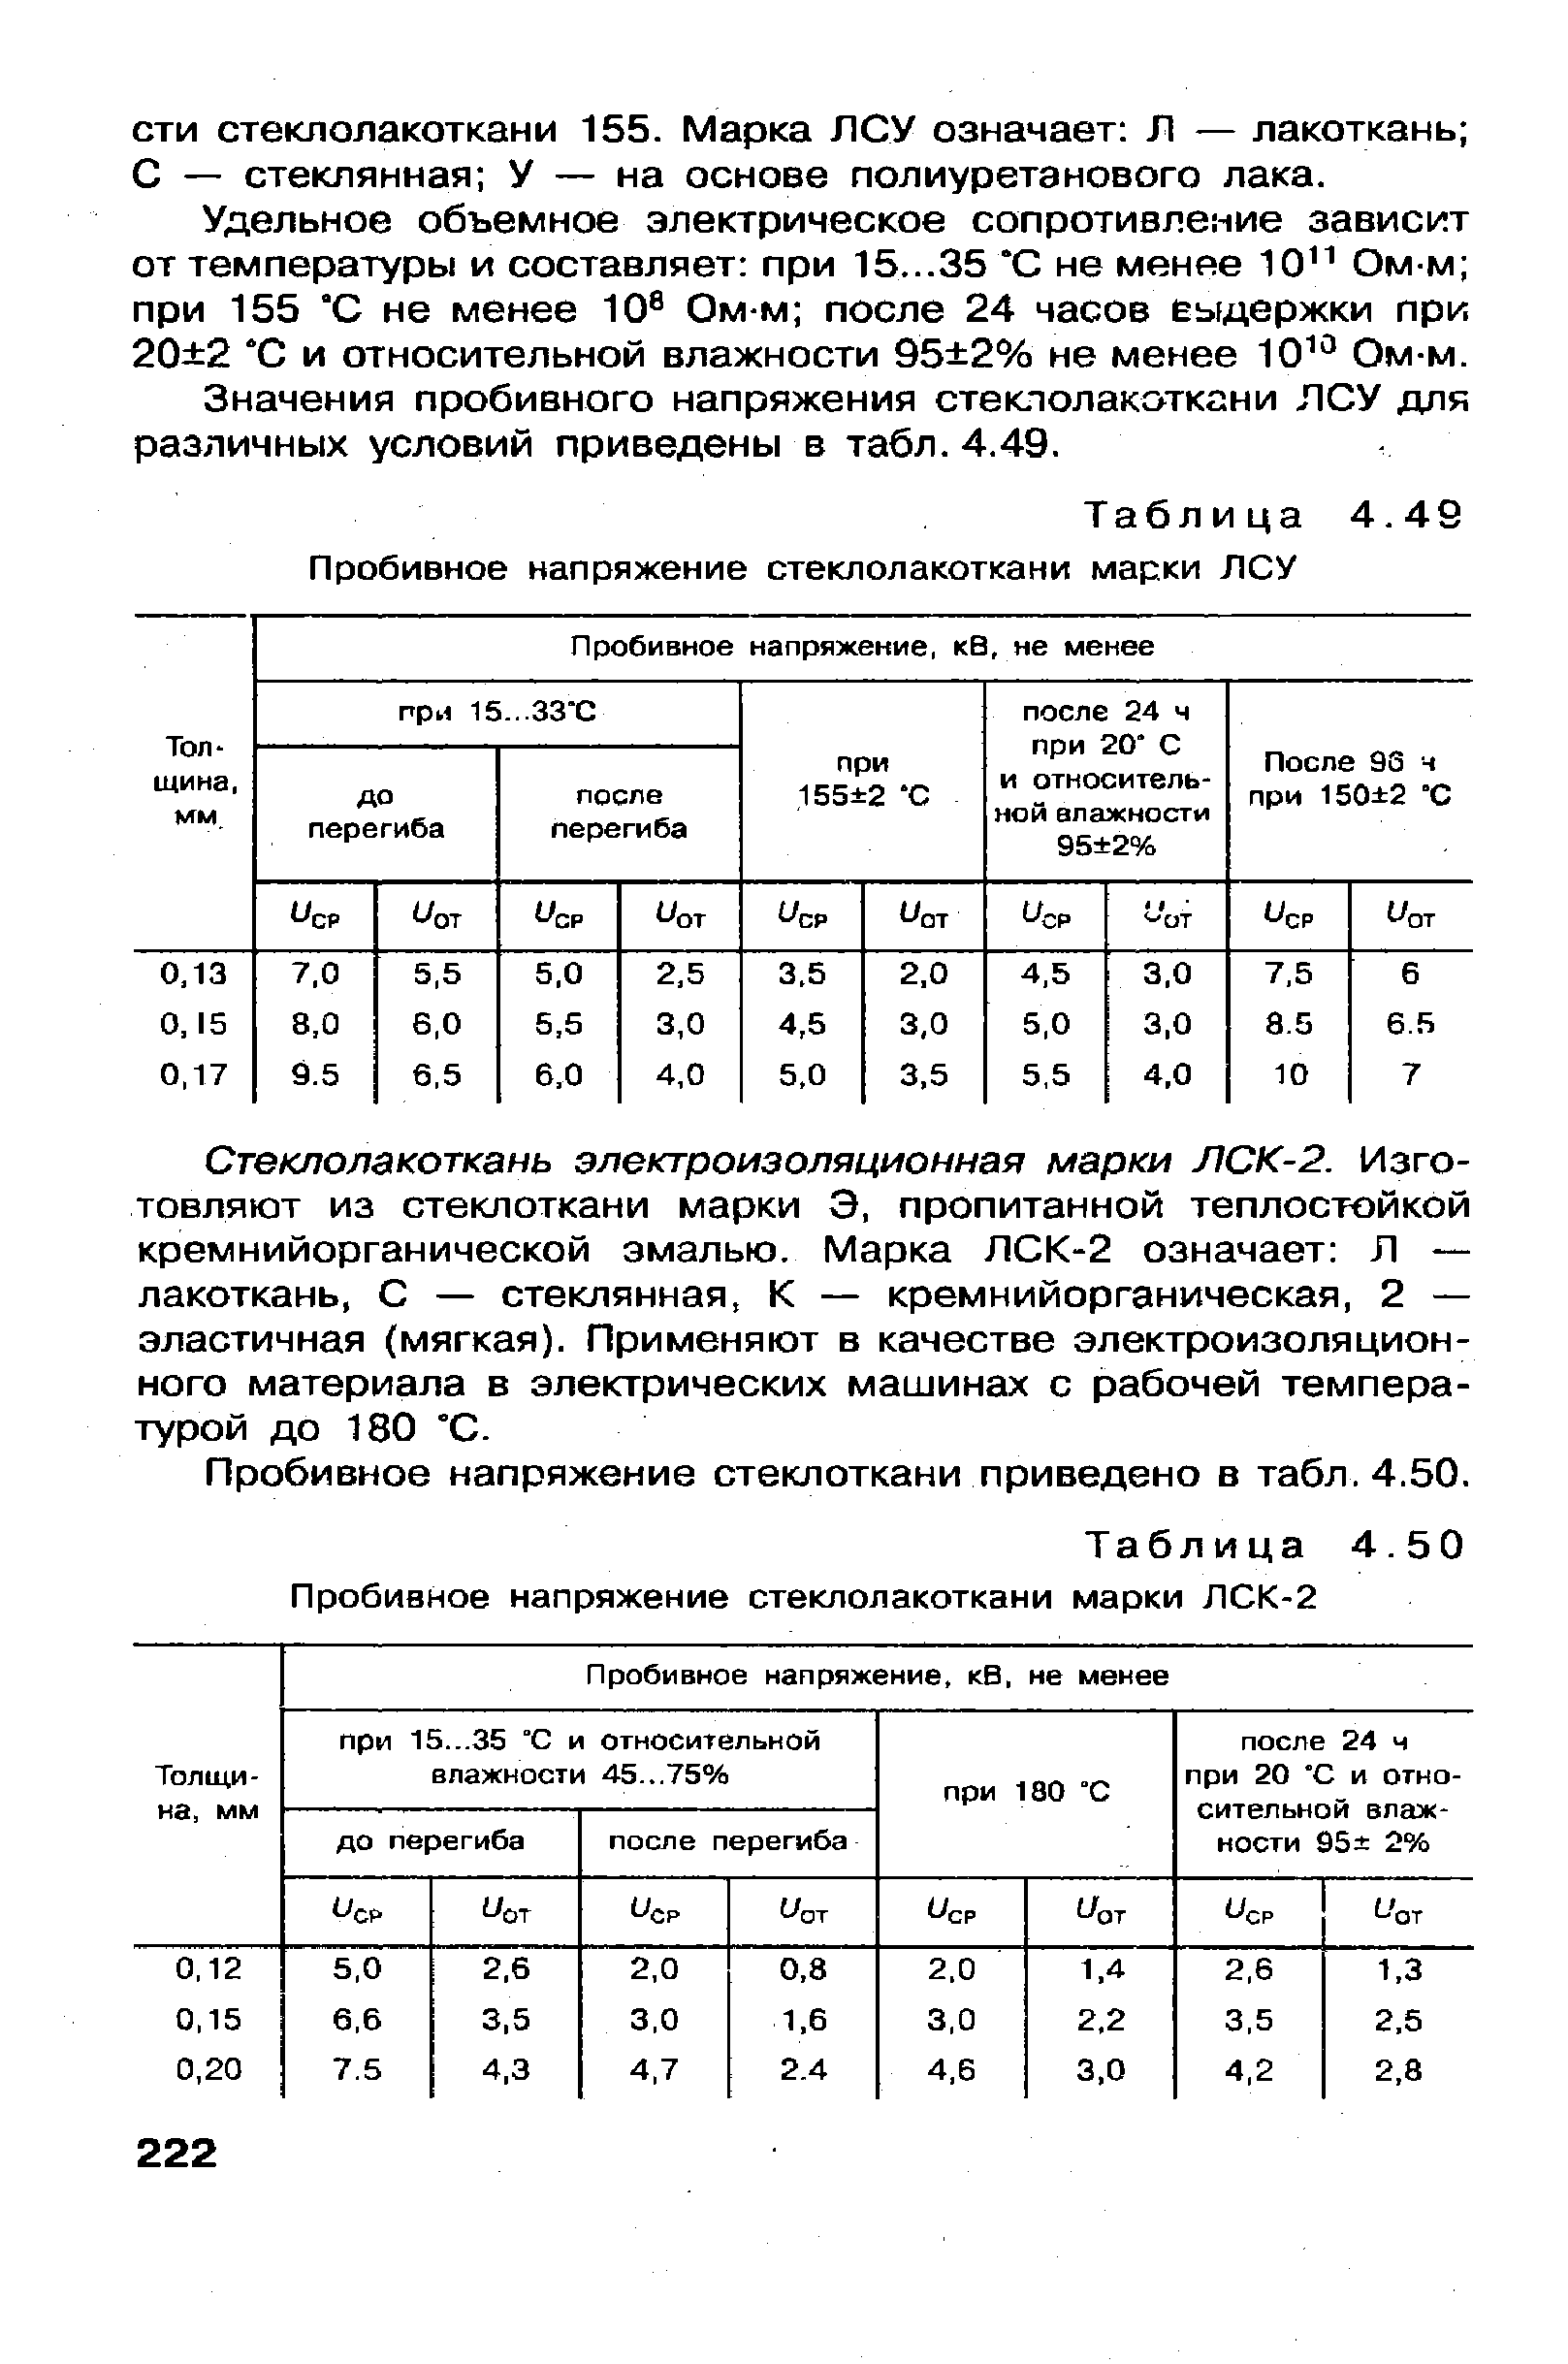 Таблица 4.49 Пробивное напряжение стеклолакоткани марки ЛСУ
